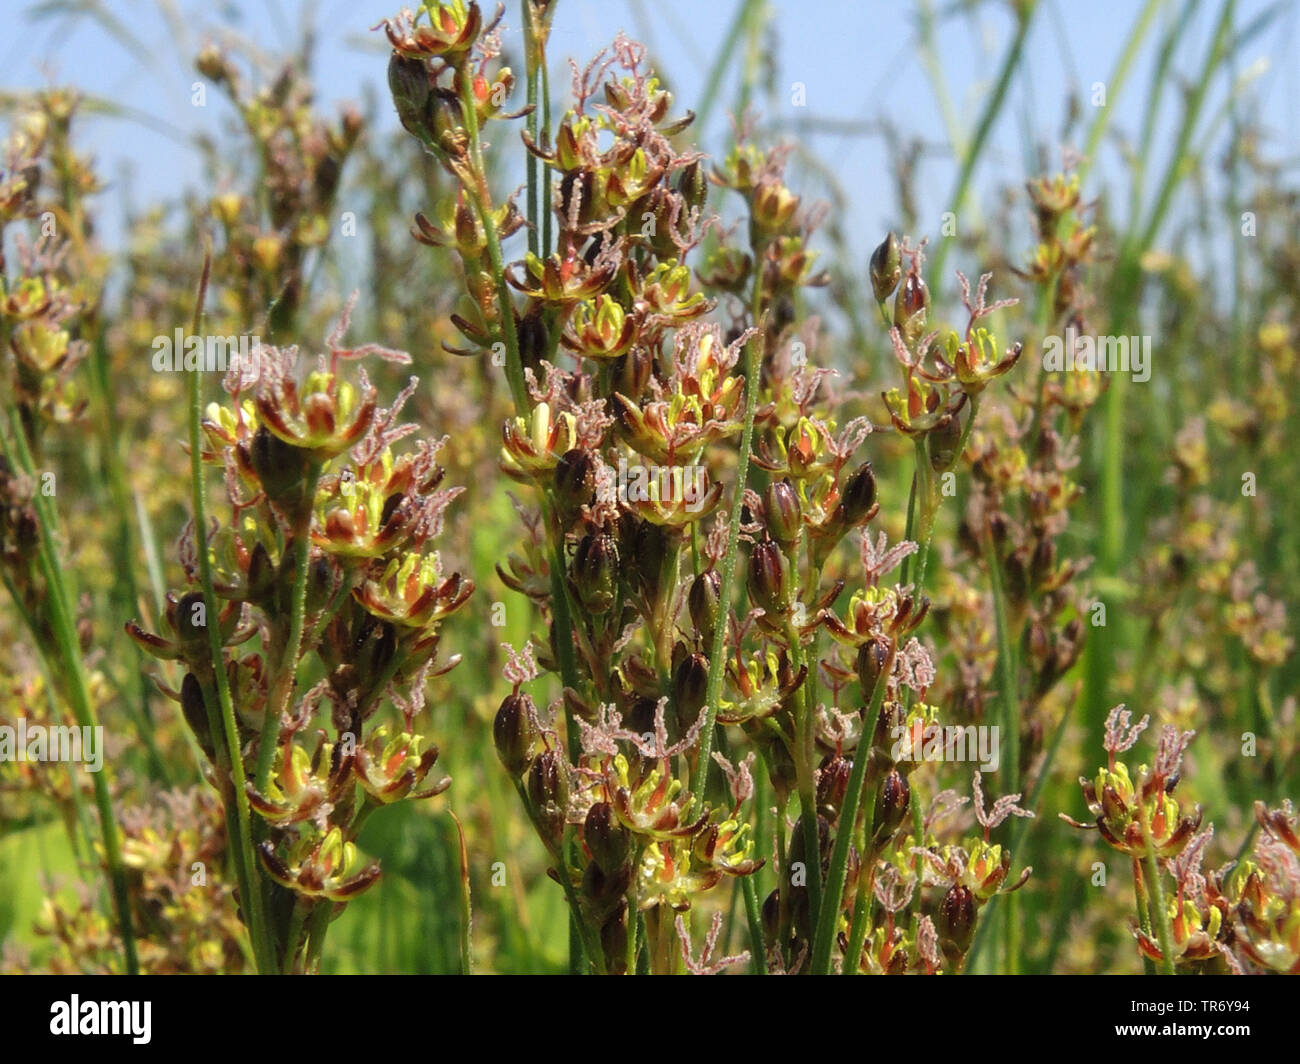 L'herbe noire, pointe-noire, pointe d'herbe de marais de sel (Juncus gerardii), la floraison, l'Allemagne, Schleswig-Holstein, dans le Nord de la Frise Orientale Banque D'Images